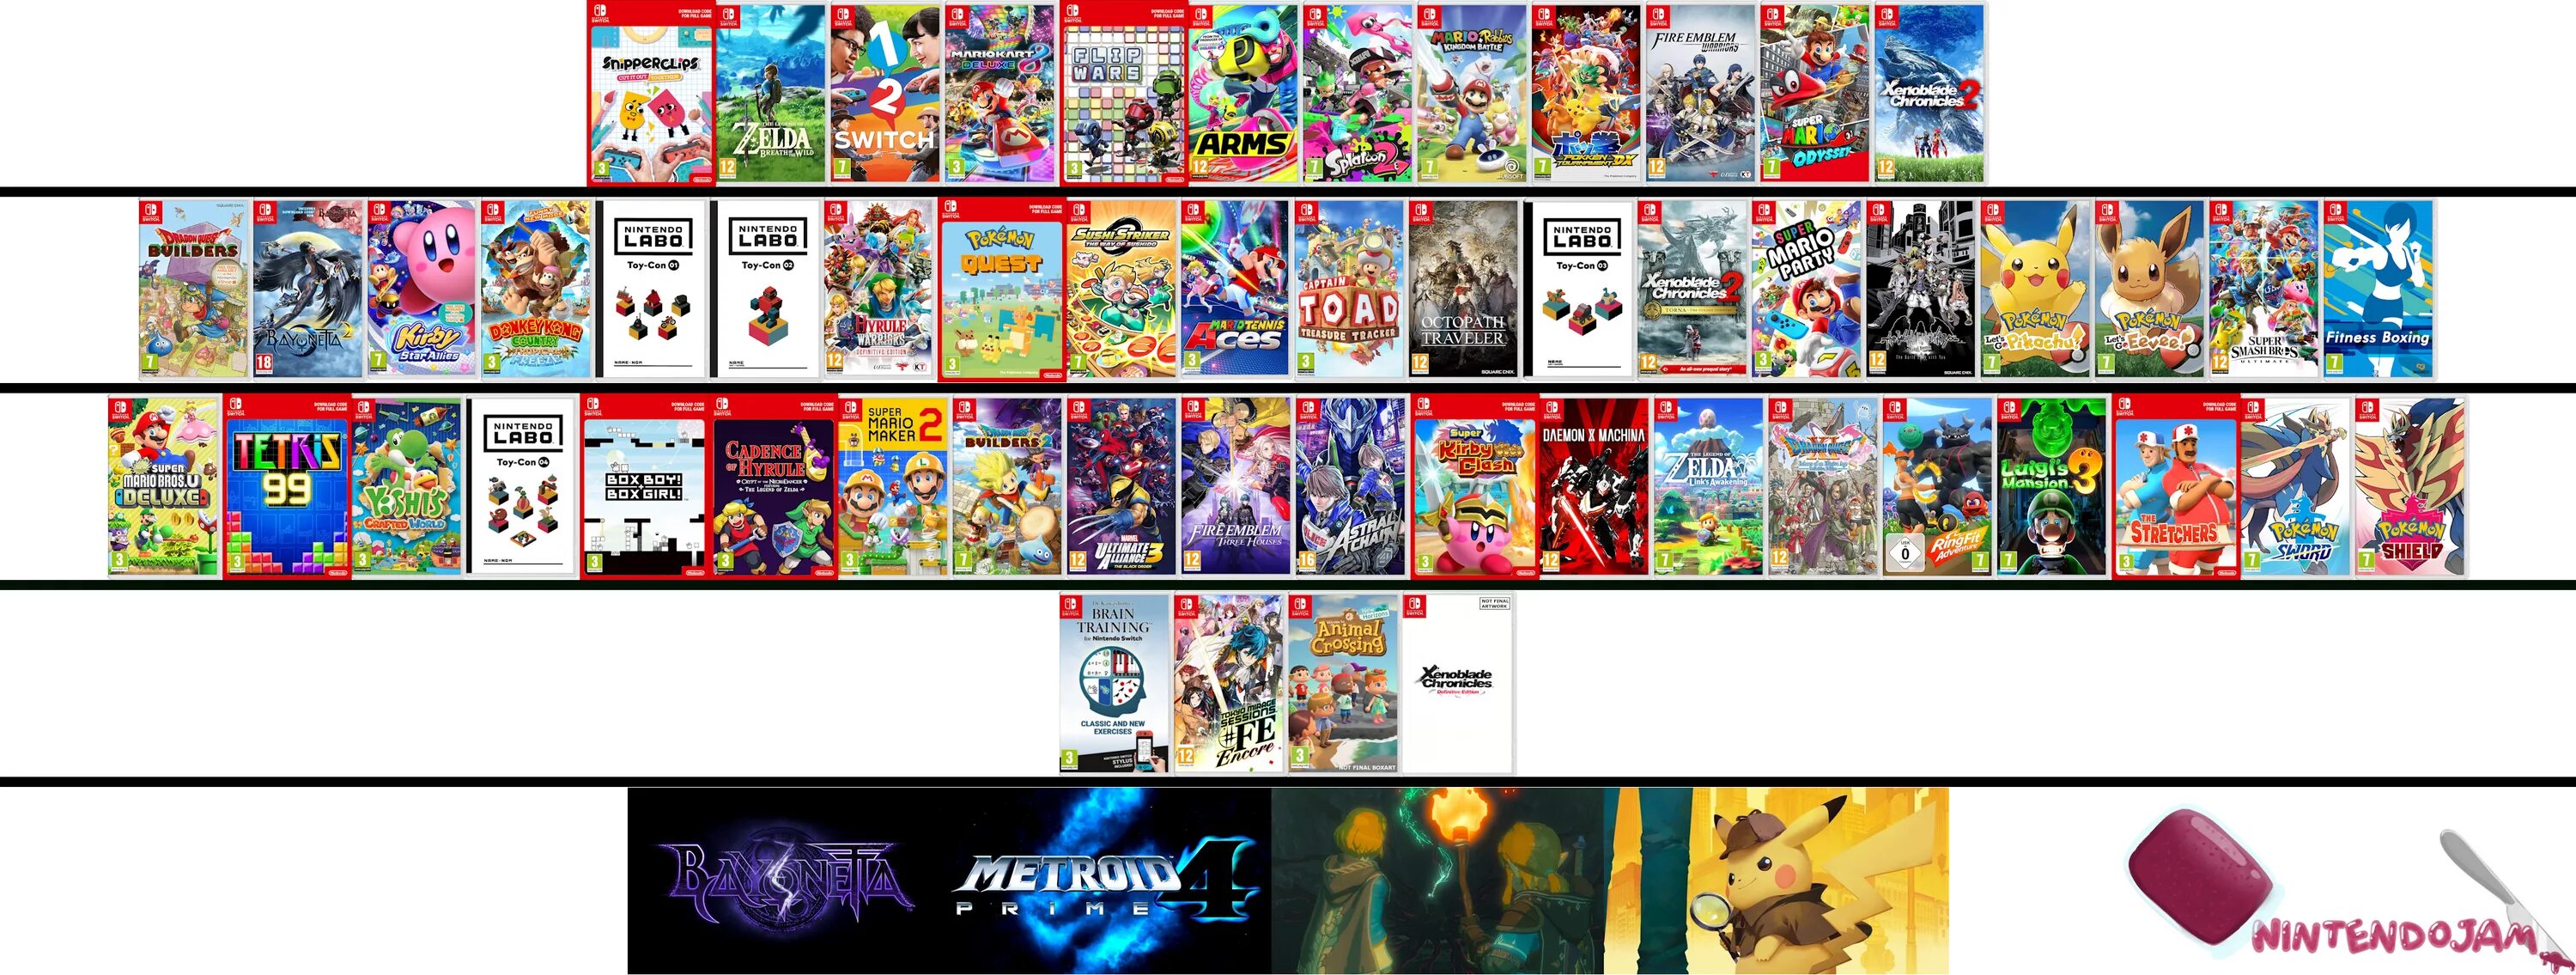 Игры на switch список. Нинтендо свитч игры список. Nintendo Switch games 2020. Нинтендо свитч персонажи. Лучшие игры для Nintendo Switch.